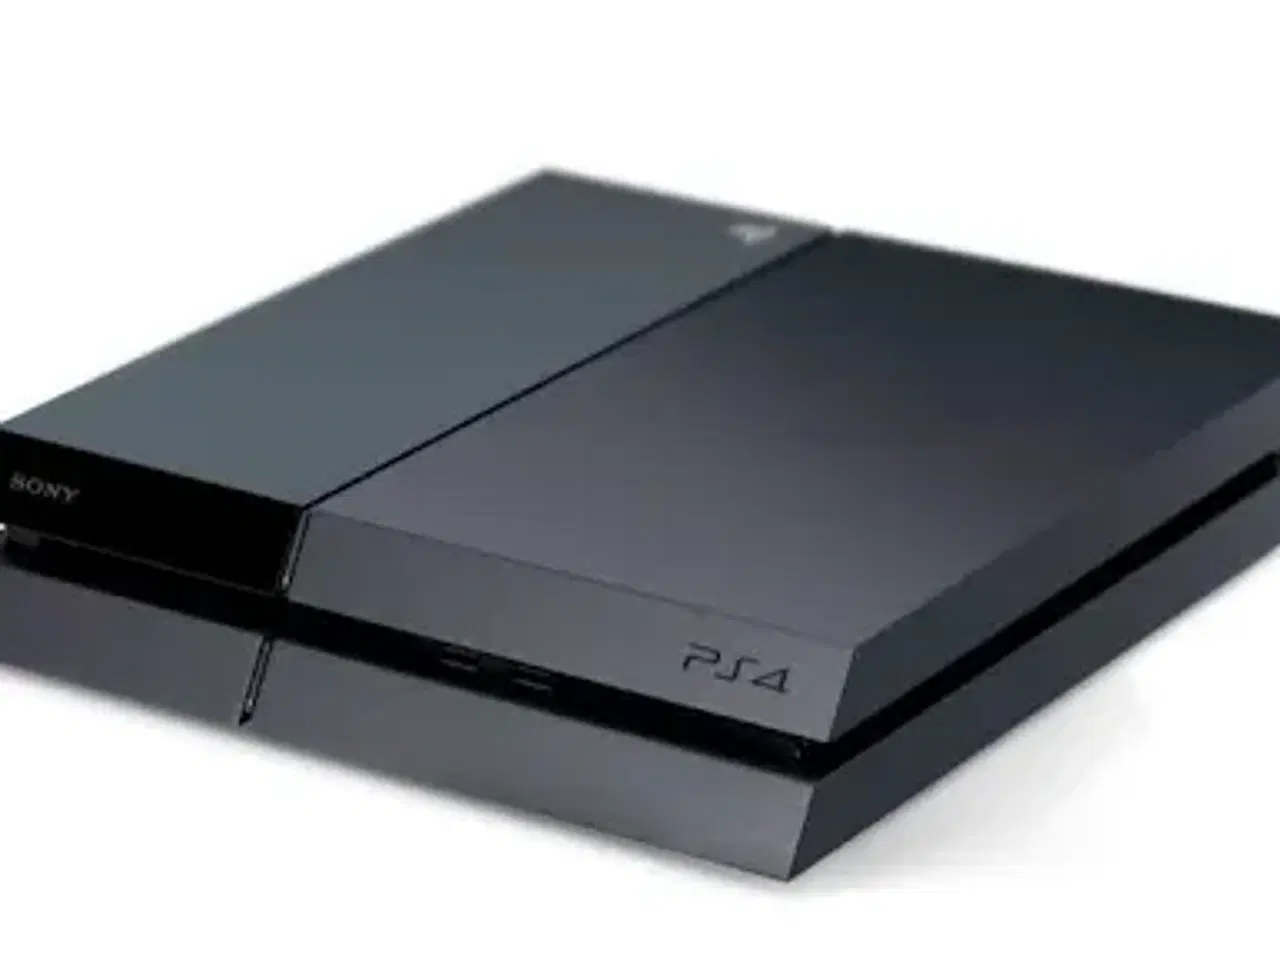 Billede 1 - Playstation4 med diverse ting til